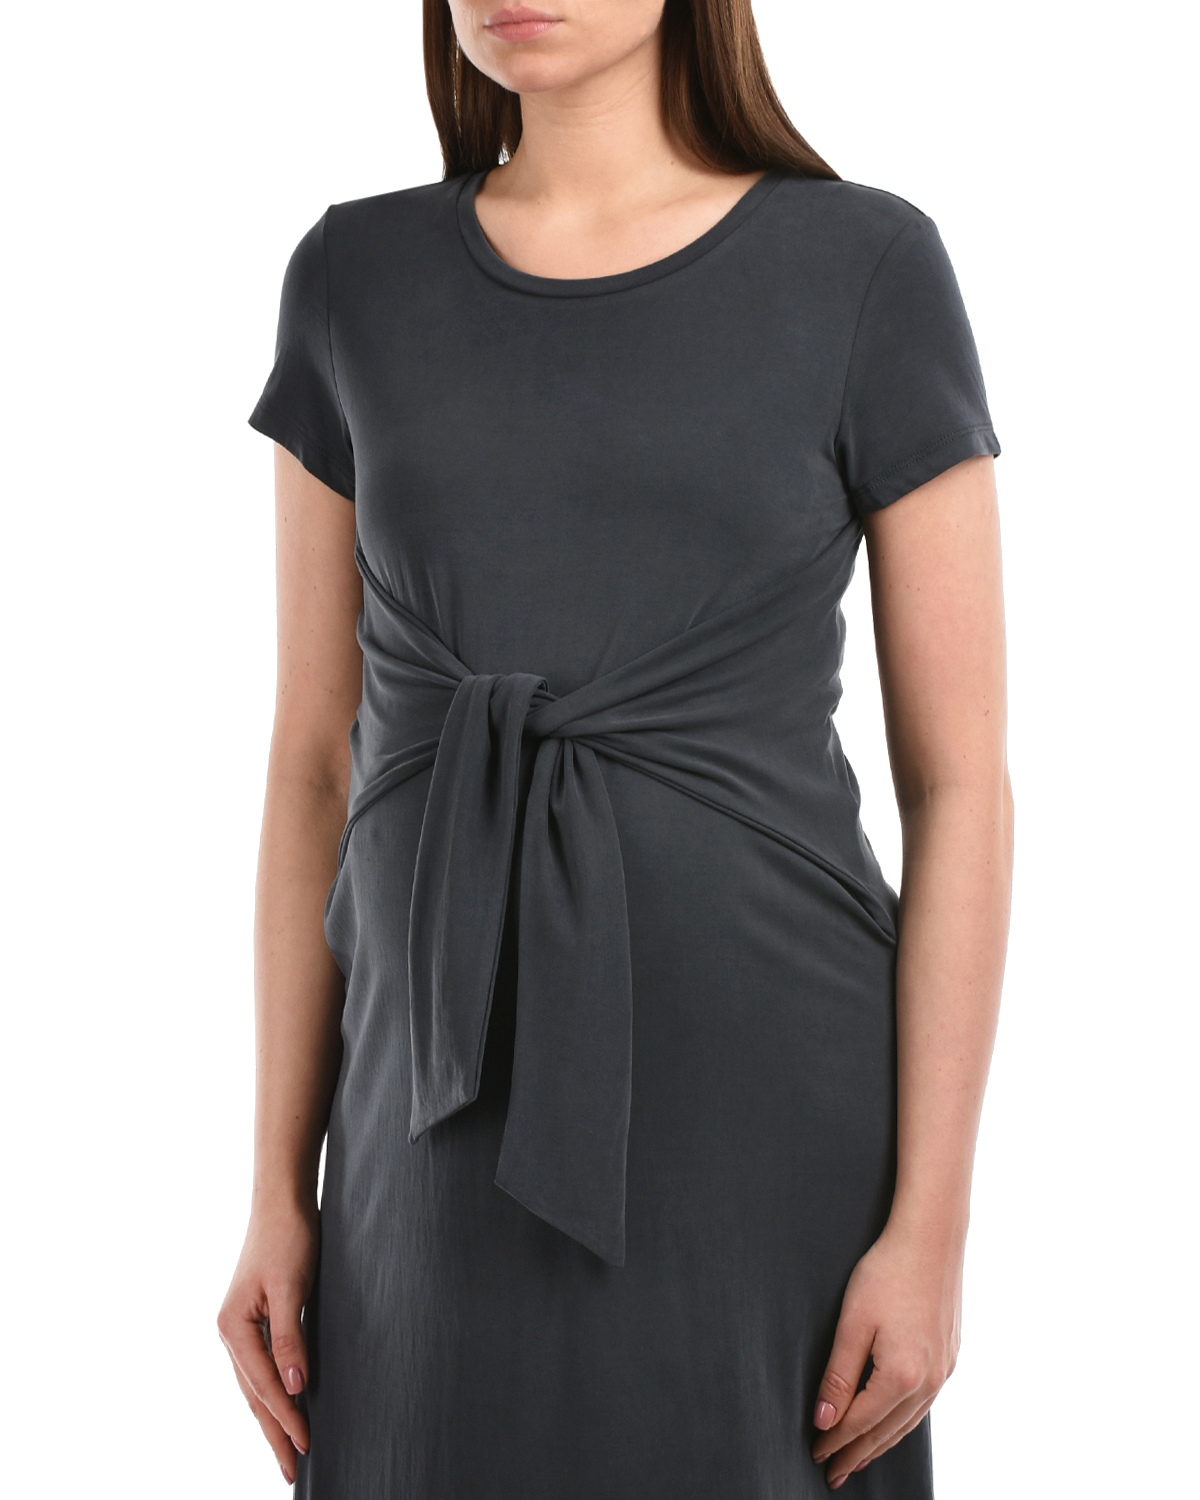 Темно-серое платье с короткими рукавами Attesa, размер 38, цвет серый - фото 7